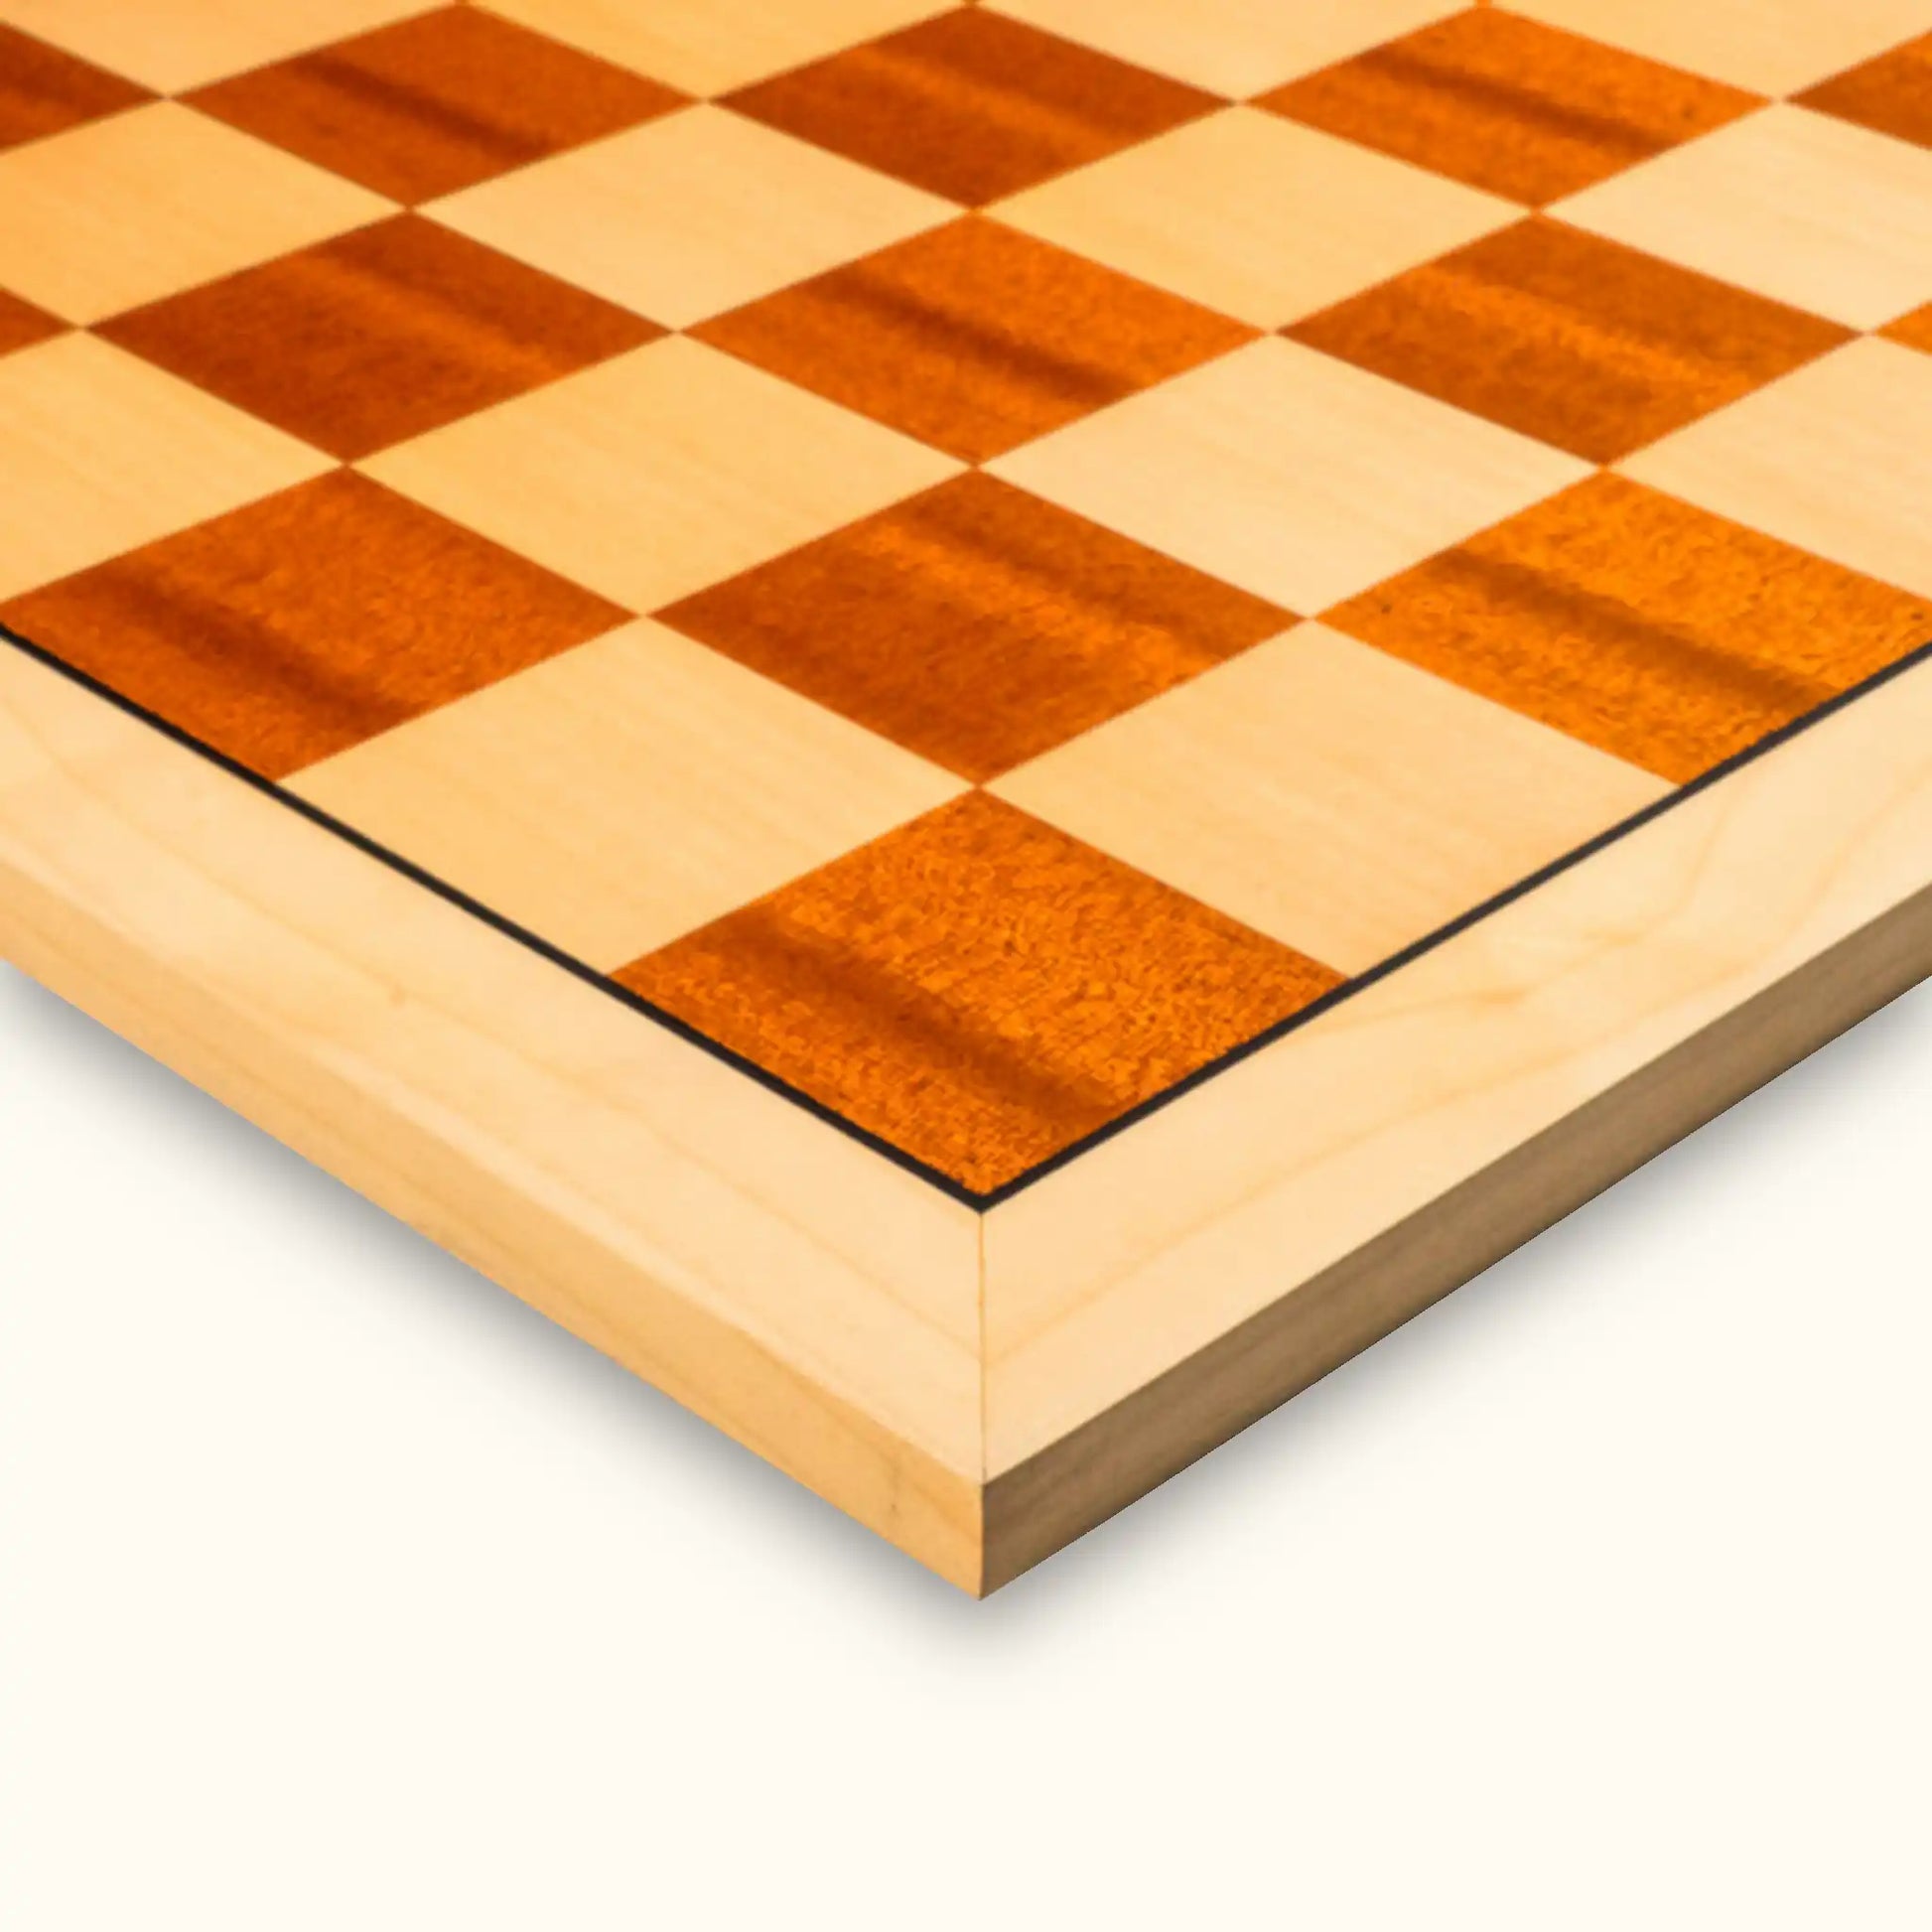 Chessboard Mahogany Standard | Tournament Size | 55 mm | Mahogany & Maple